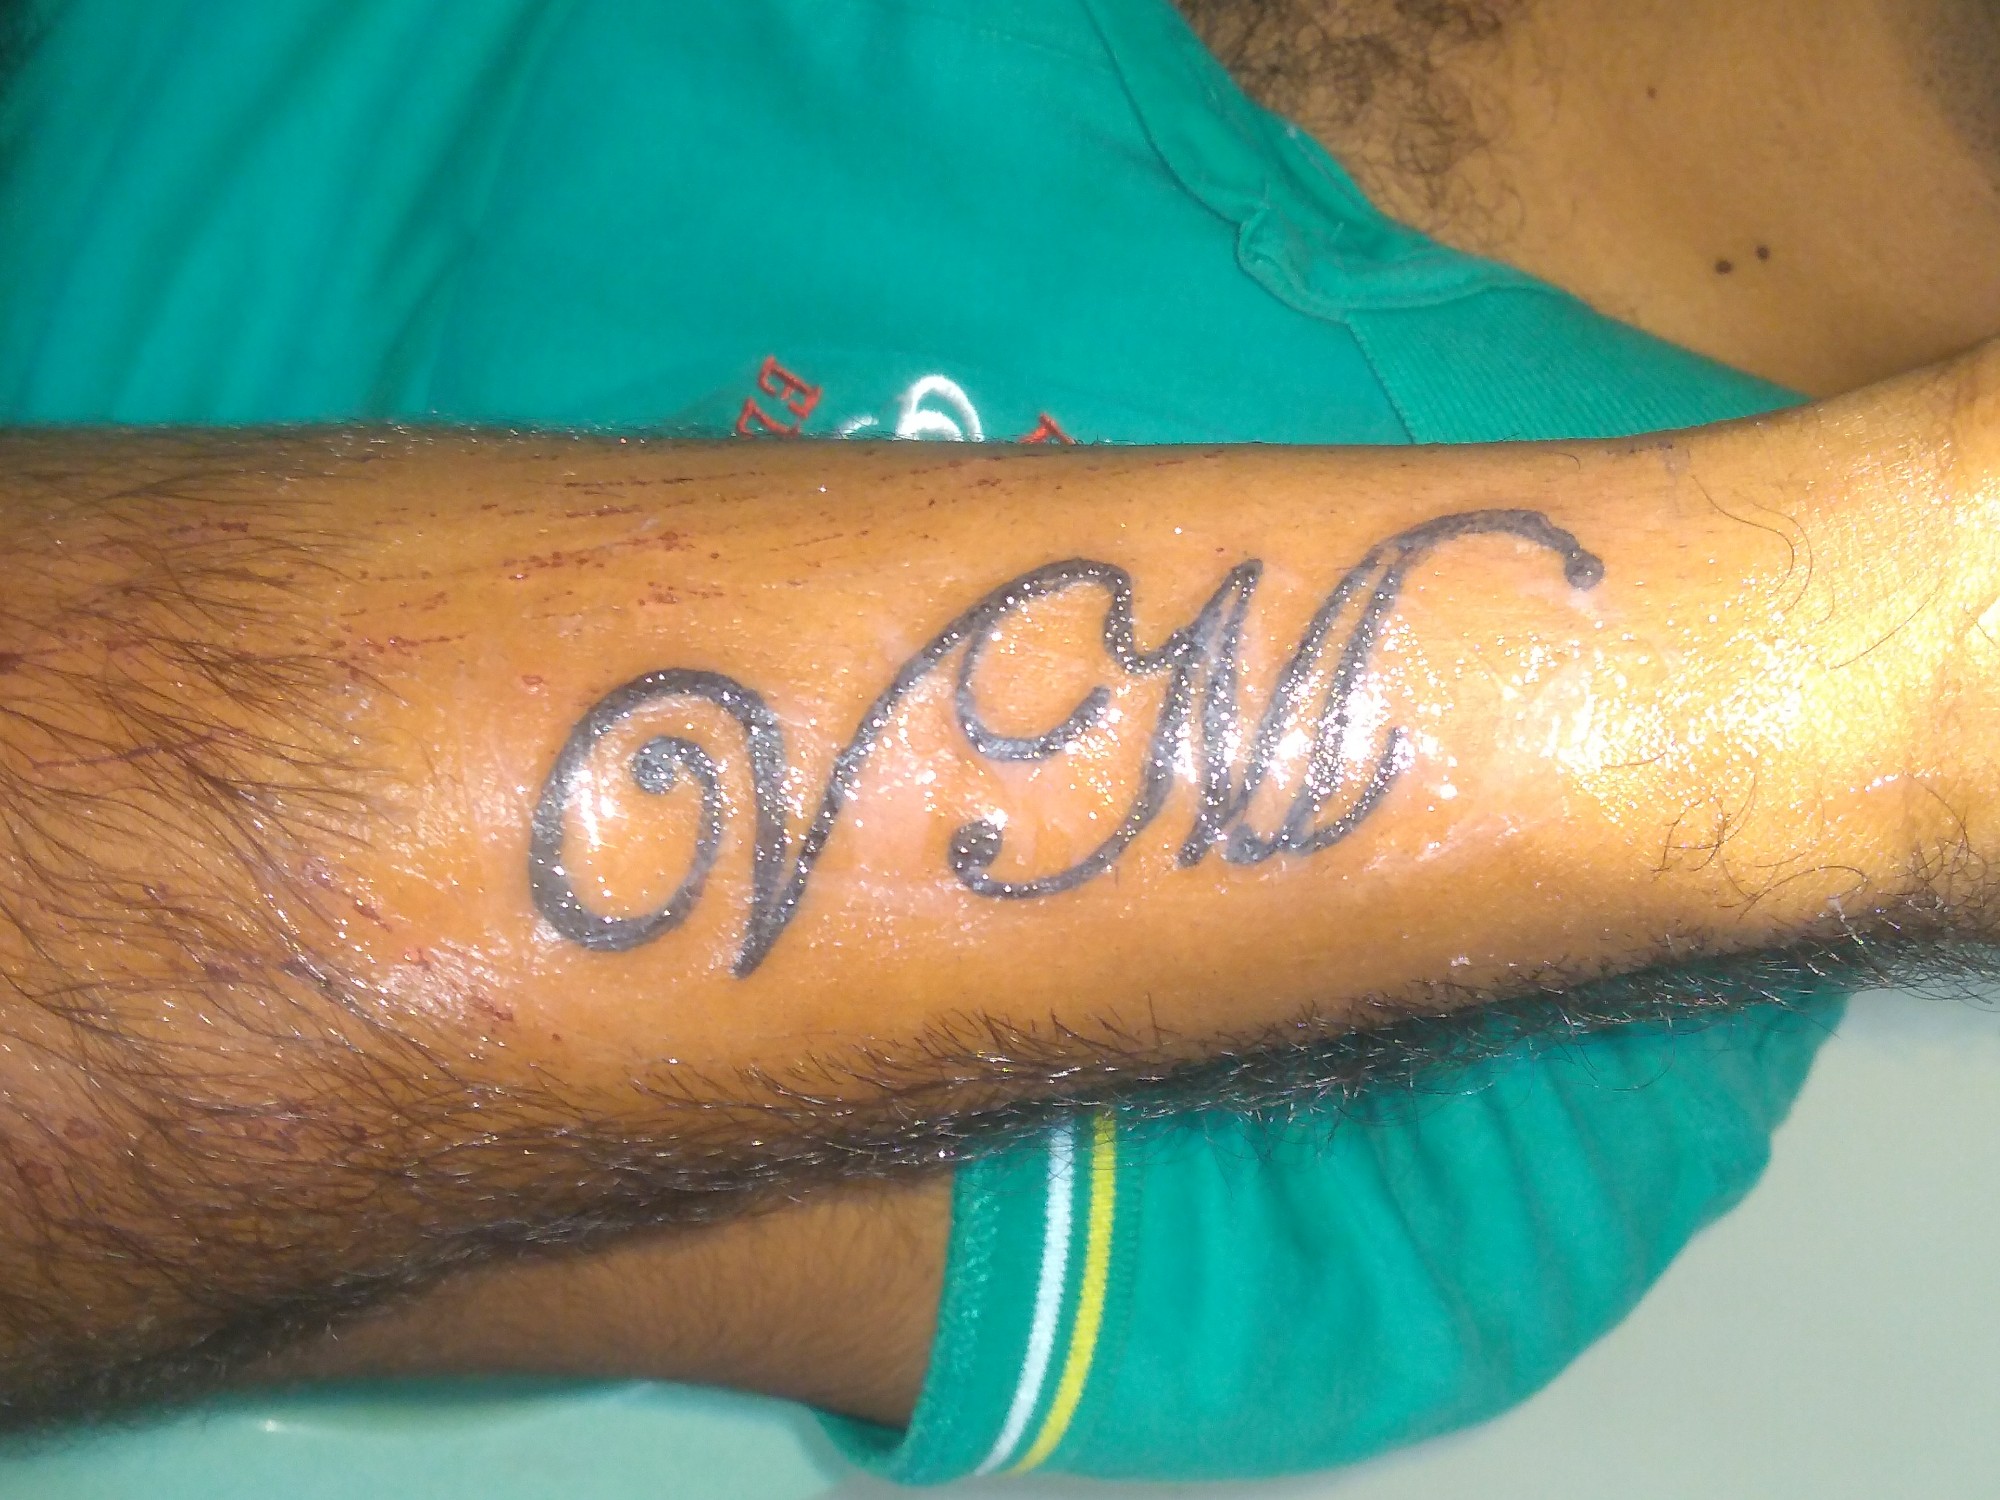 Mhouse Ink Tattoo in ManjalpurVadodara  Best Tattoo Artists in Vadodara   Justdial